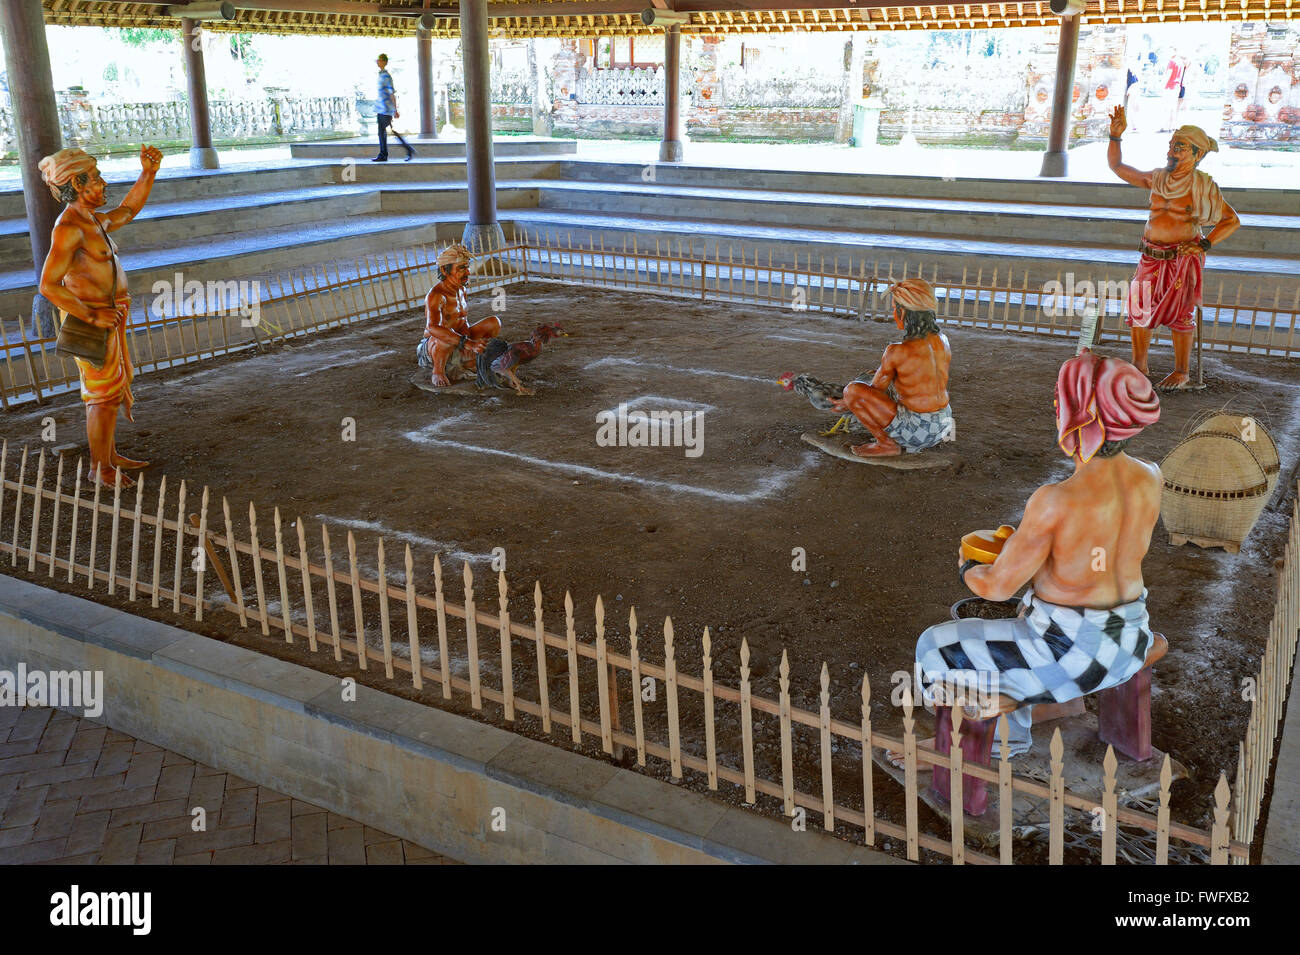 Darstellung des Traditionellen Hahnenkampfes, Tempel Pura Taman Ayun, Balis Zweitwichtigster Tempel, Nationales Heiligtum, Bali, Indonesien Stockfoto